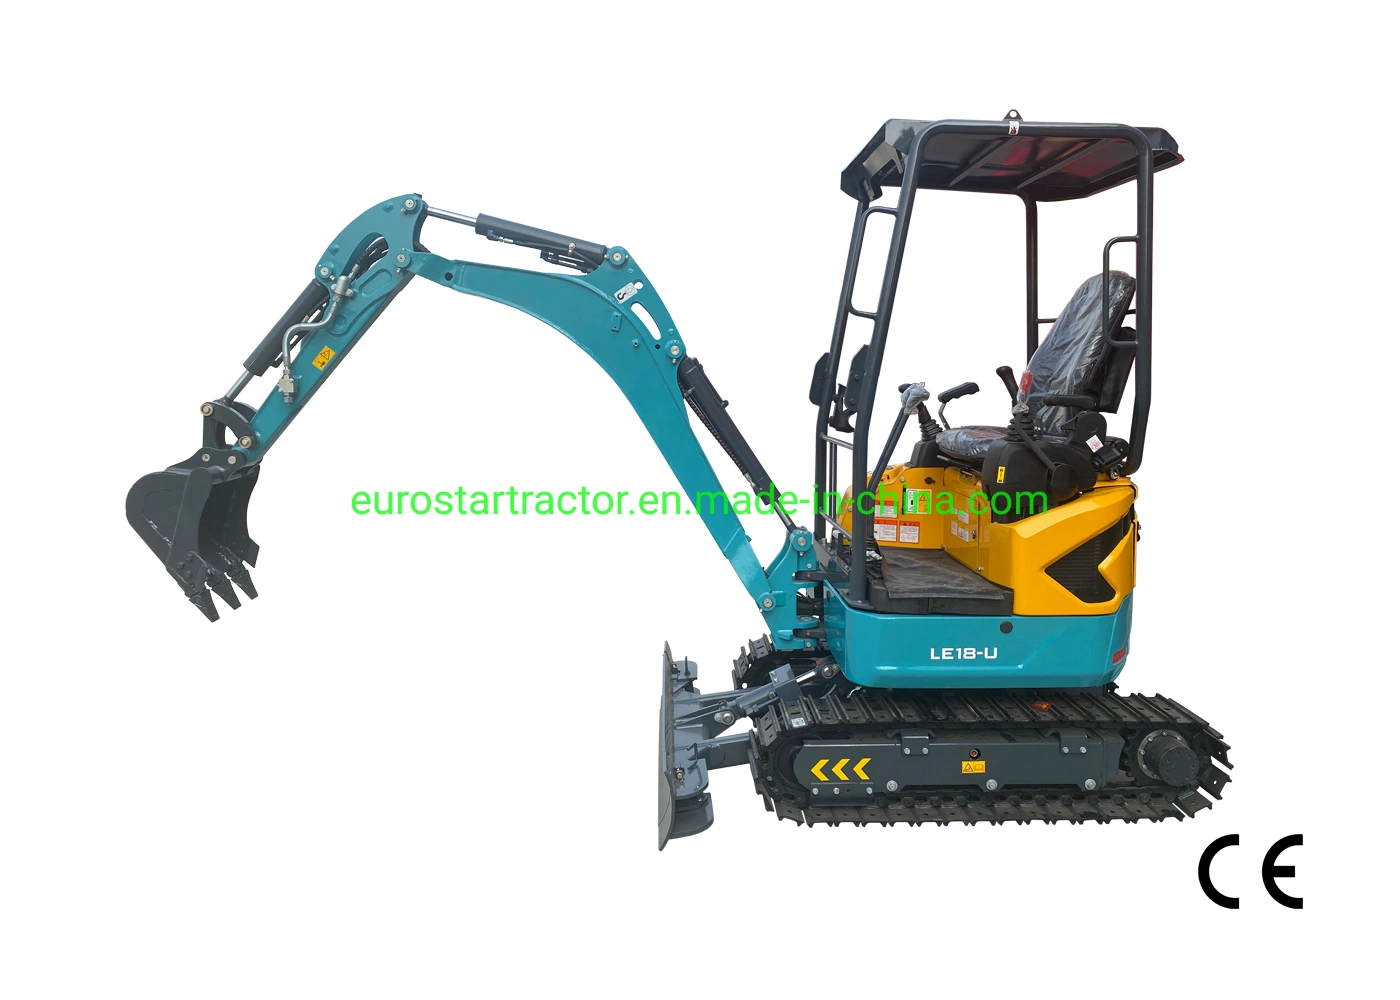 Escavadora de motor de retroescavadora com Escavadora de motores Euro 5 CE Ex1800K/Y Mini Escavadora de terra Deisel para tractores de rastos hidráulicos de pequena dimensão para Construção